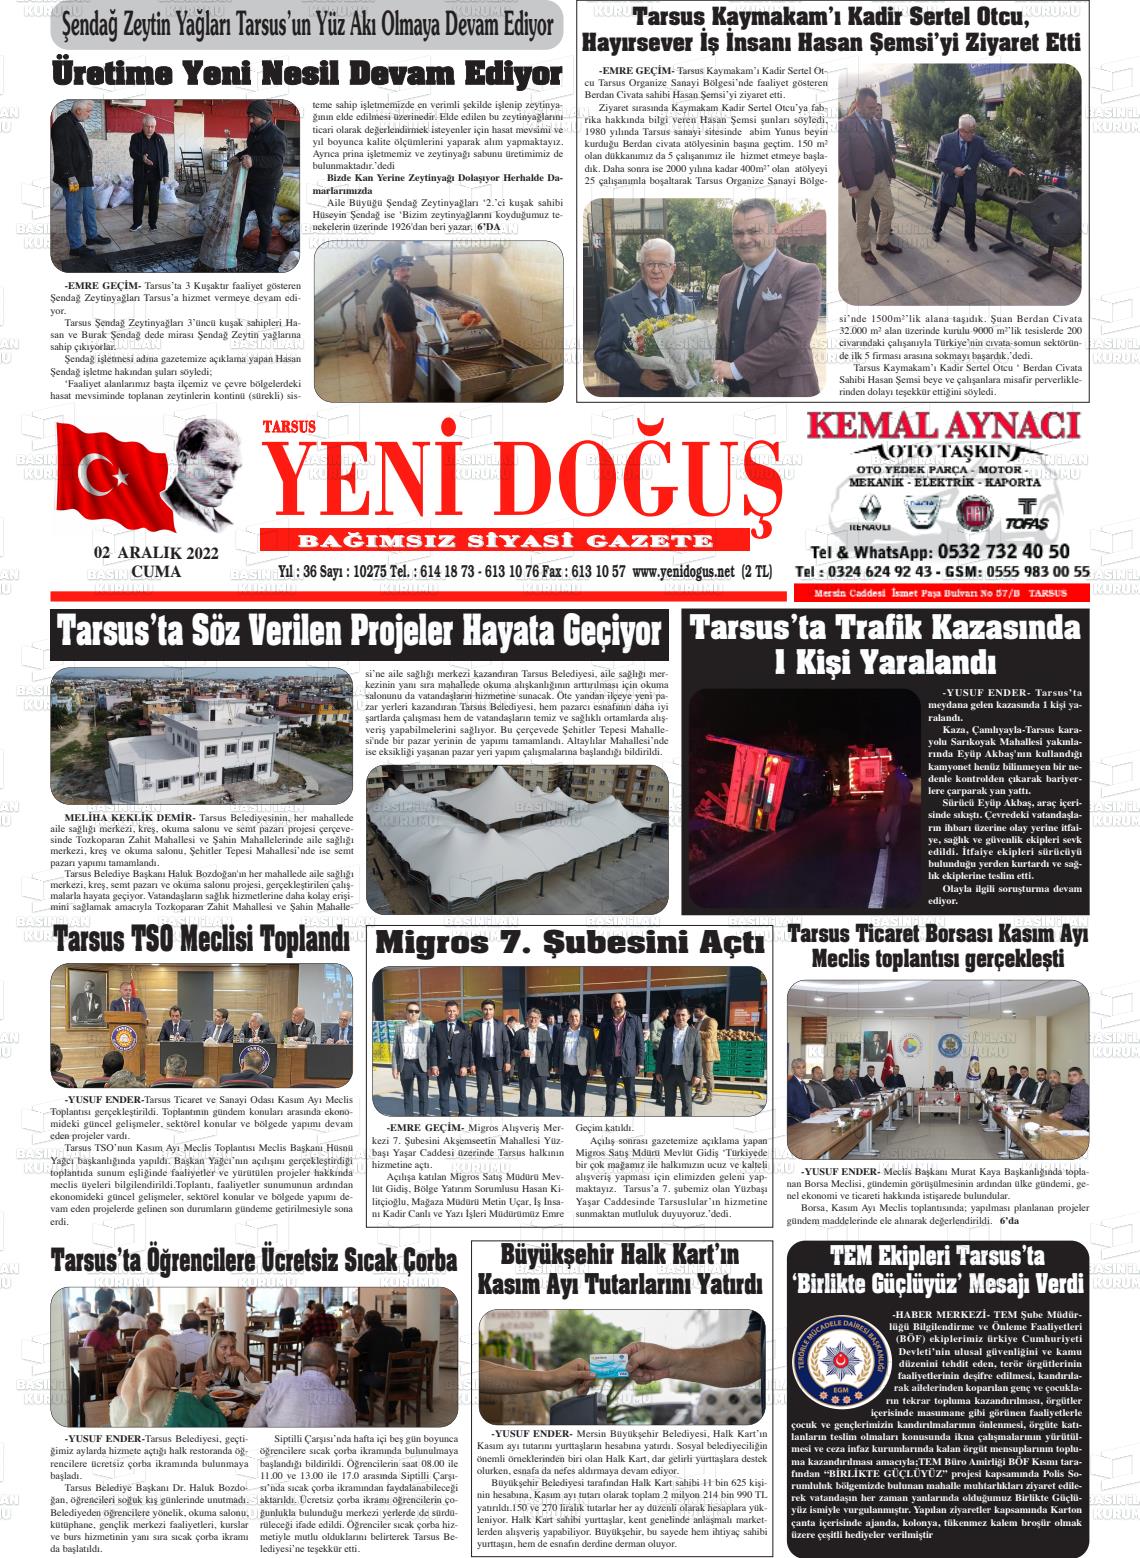 02 Aralık 2022 Tarsus Yeni Doğuş Gazete Manşeti